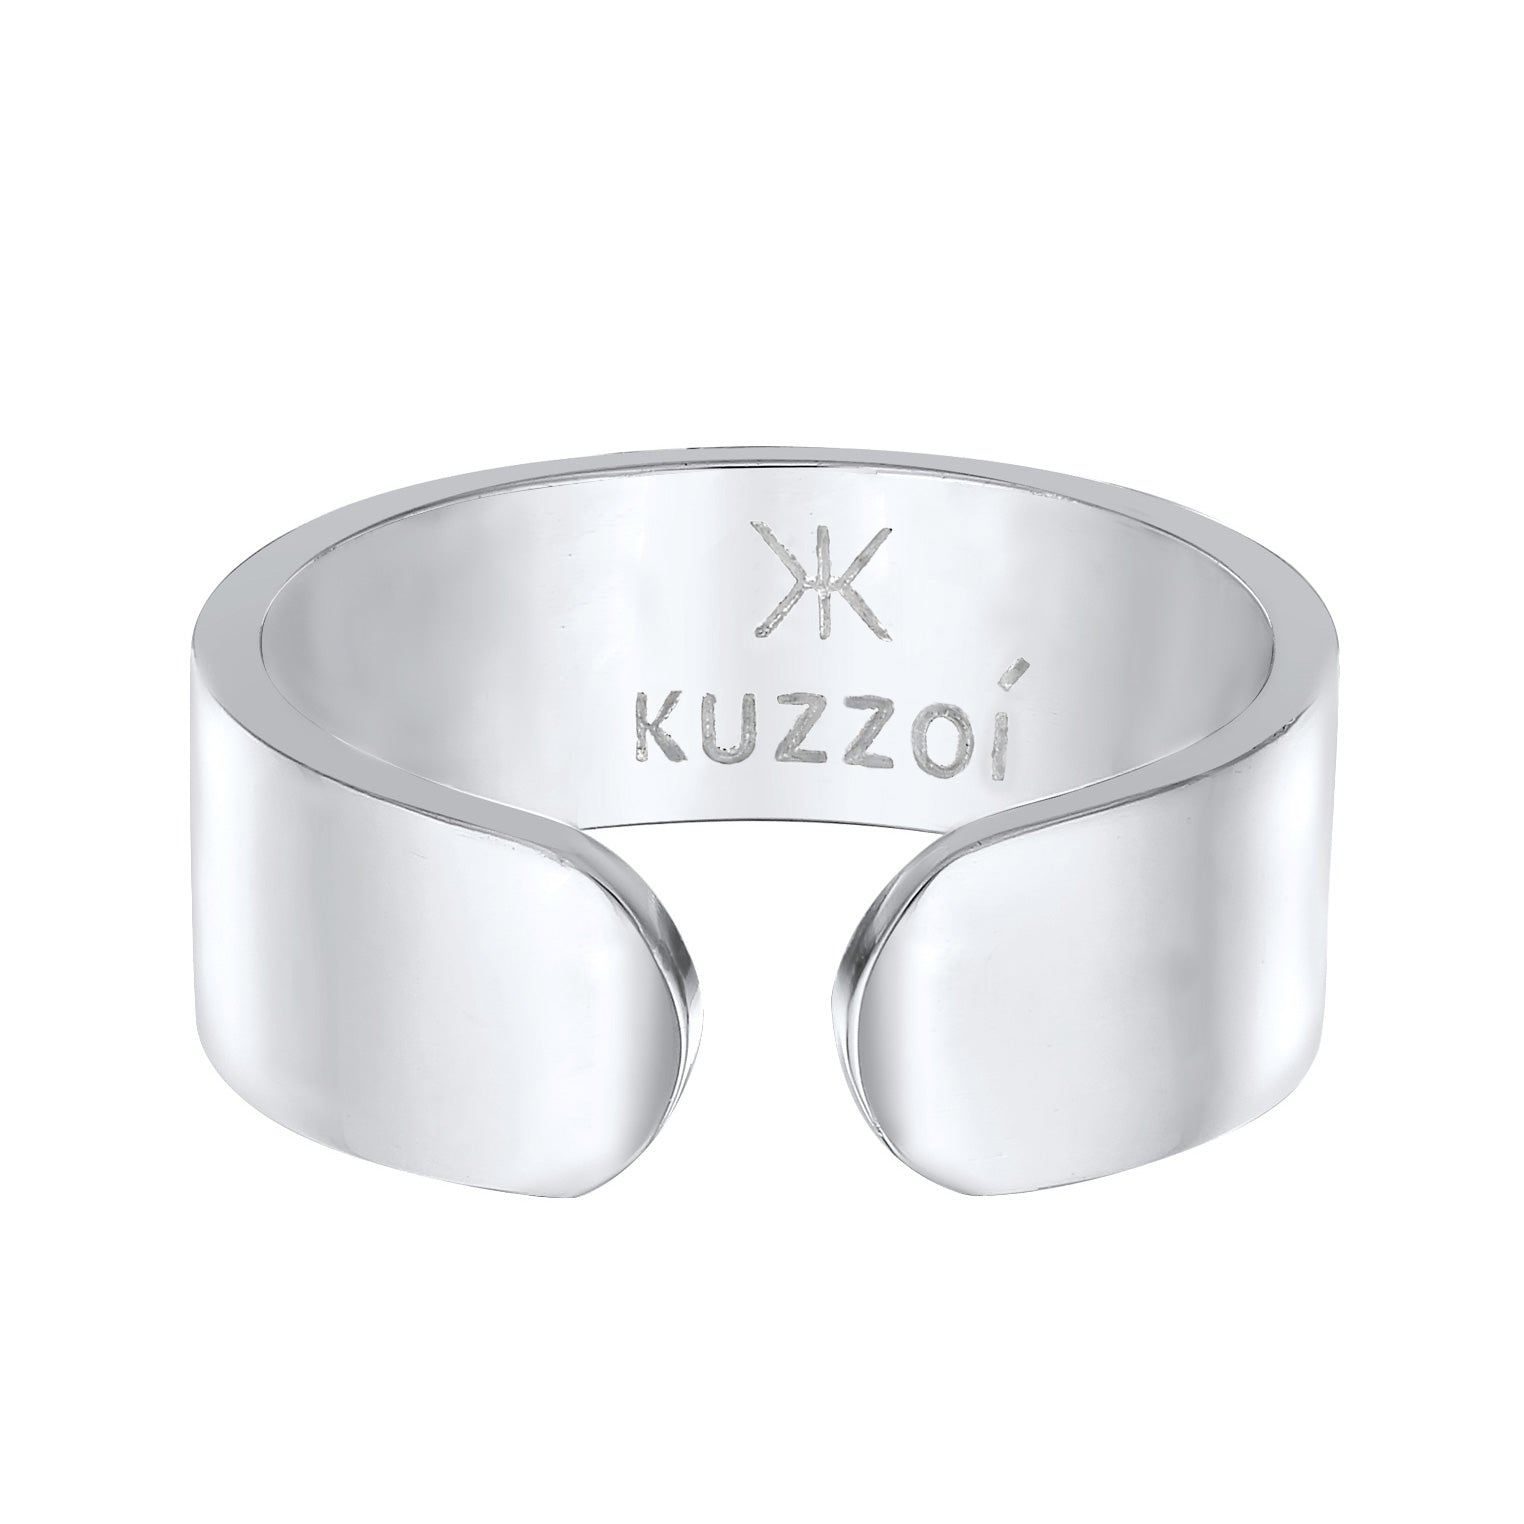 Band Ring Open – Kuzzoi